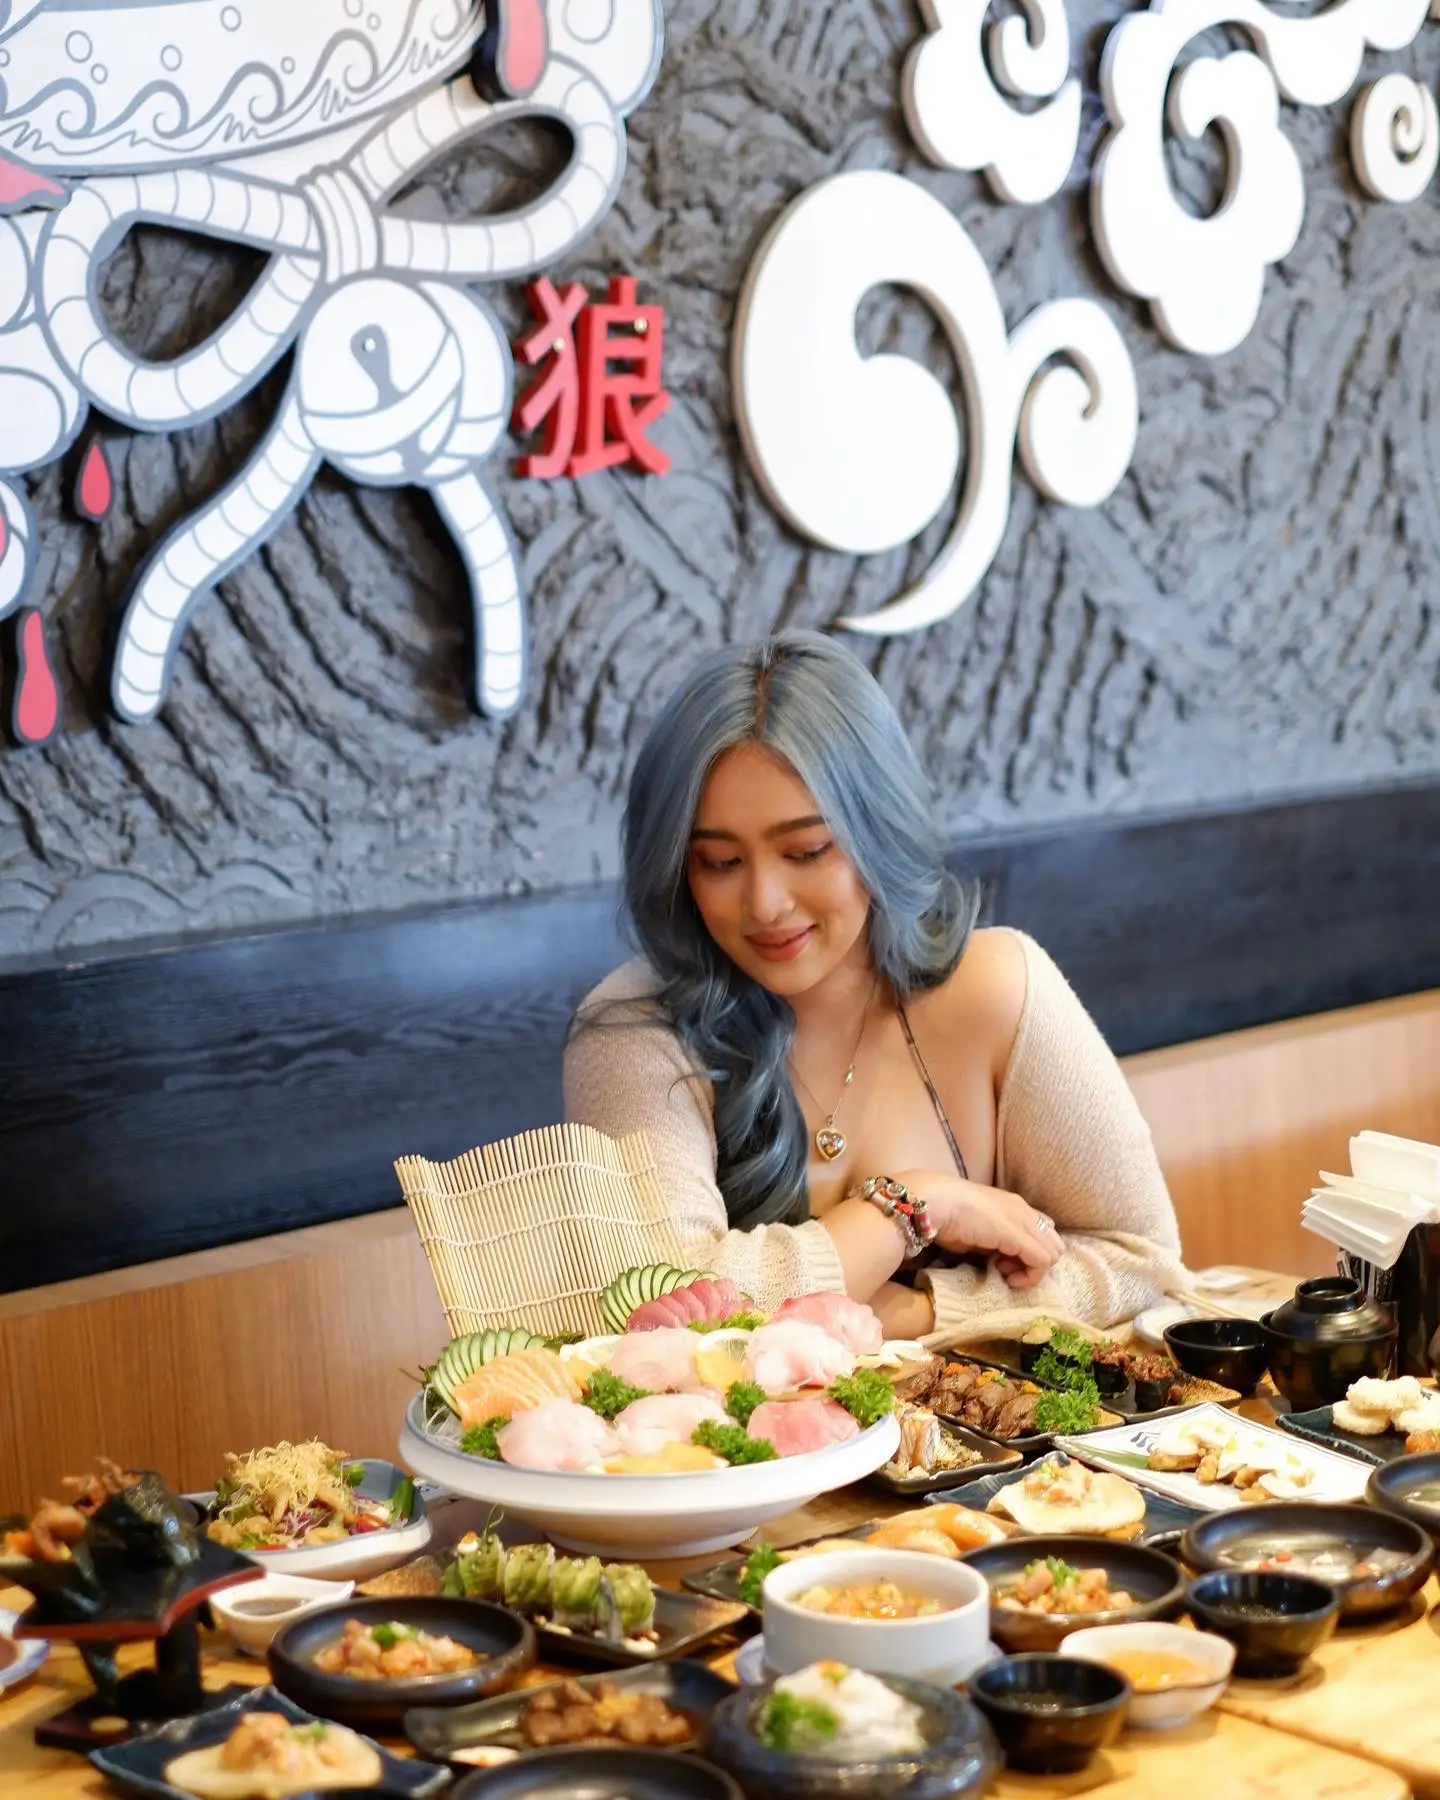 Okami Sushi บุฟเฟ่ต์อาหารญี่ปุ่นสุดพรีเมี่ยม จ่ายราคาเดียวกินได้ทั้งร้าน